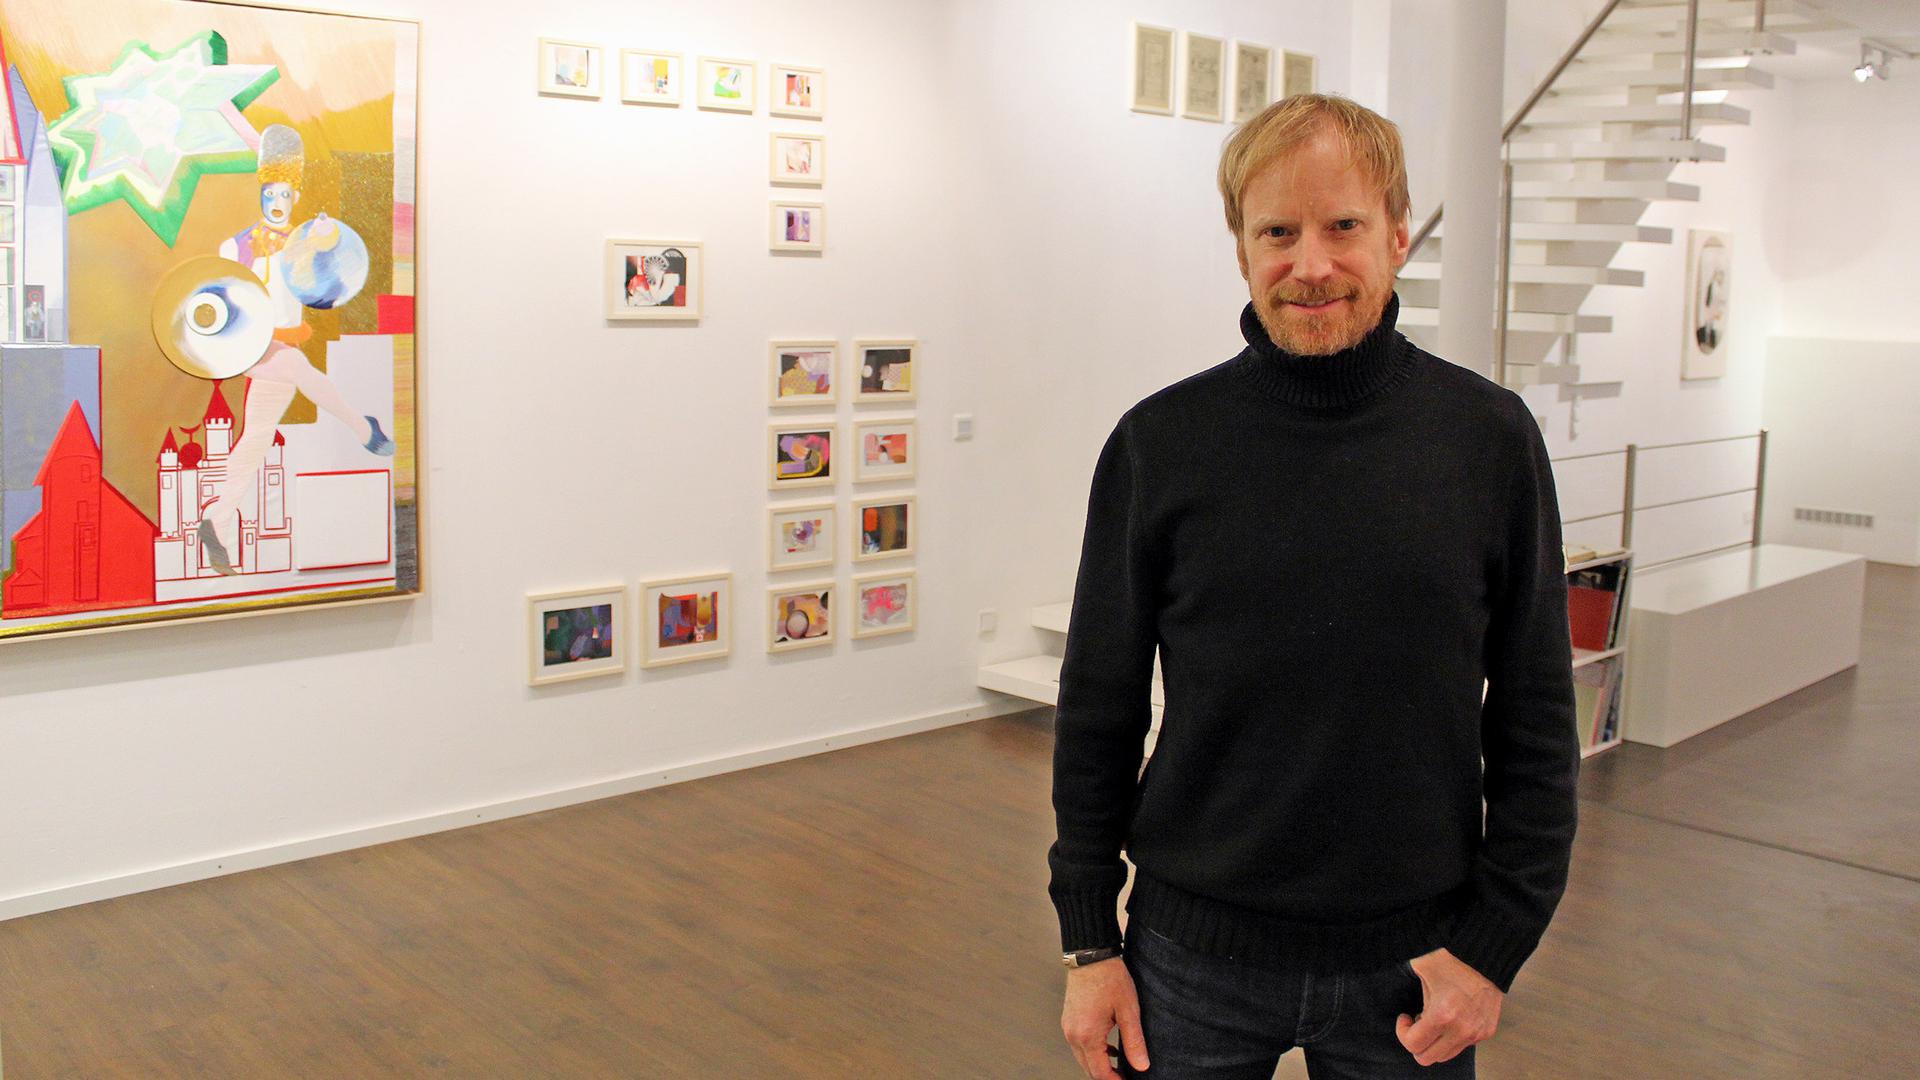 Galerist Dirk Supper lässt junge, noch unbekannte Künstler mit etablierten Künstlern in Dialog treten. Noch bis 28. Januar läuft die Ausstellung „20/10“. Mit ihr feiert die Galerie Supper ihr 20-jähriges Bestehen und zugleich „zehn Jahre Baden-Baden“.